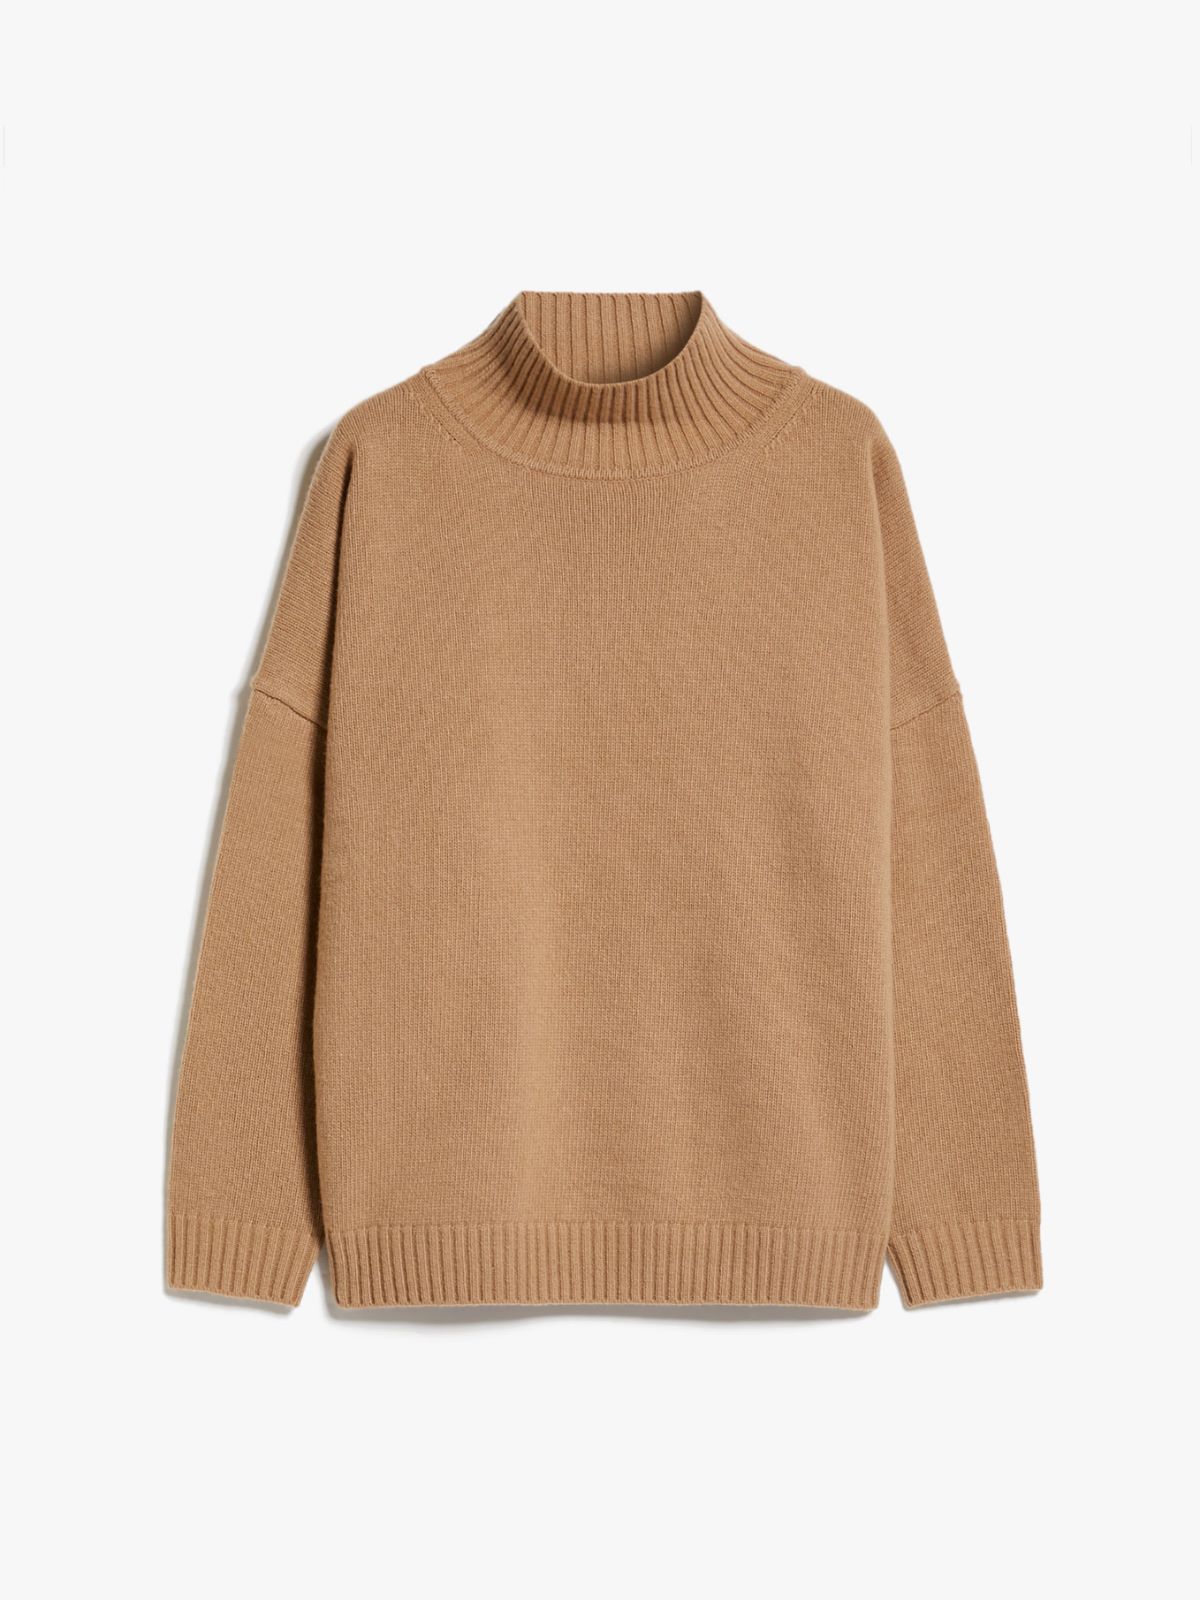 Wool yarn sweater - CAMEL - Weekend Max Mara - 7